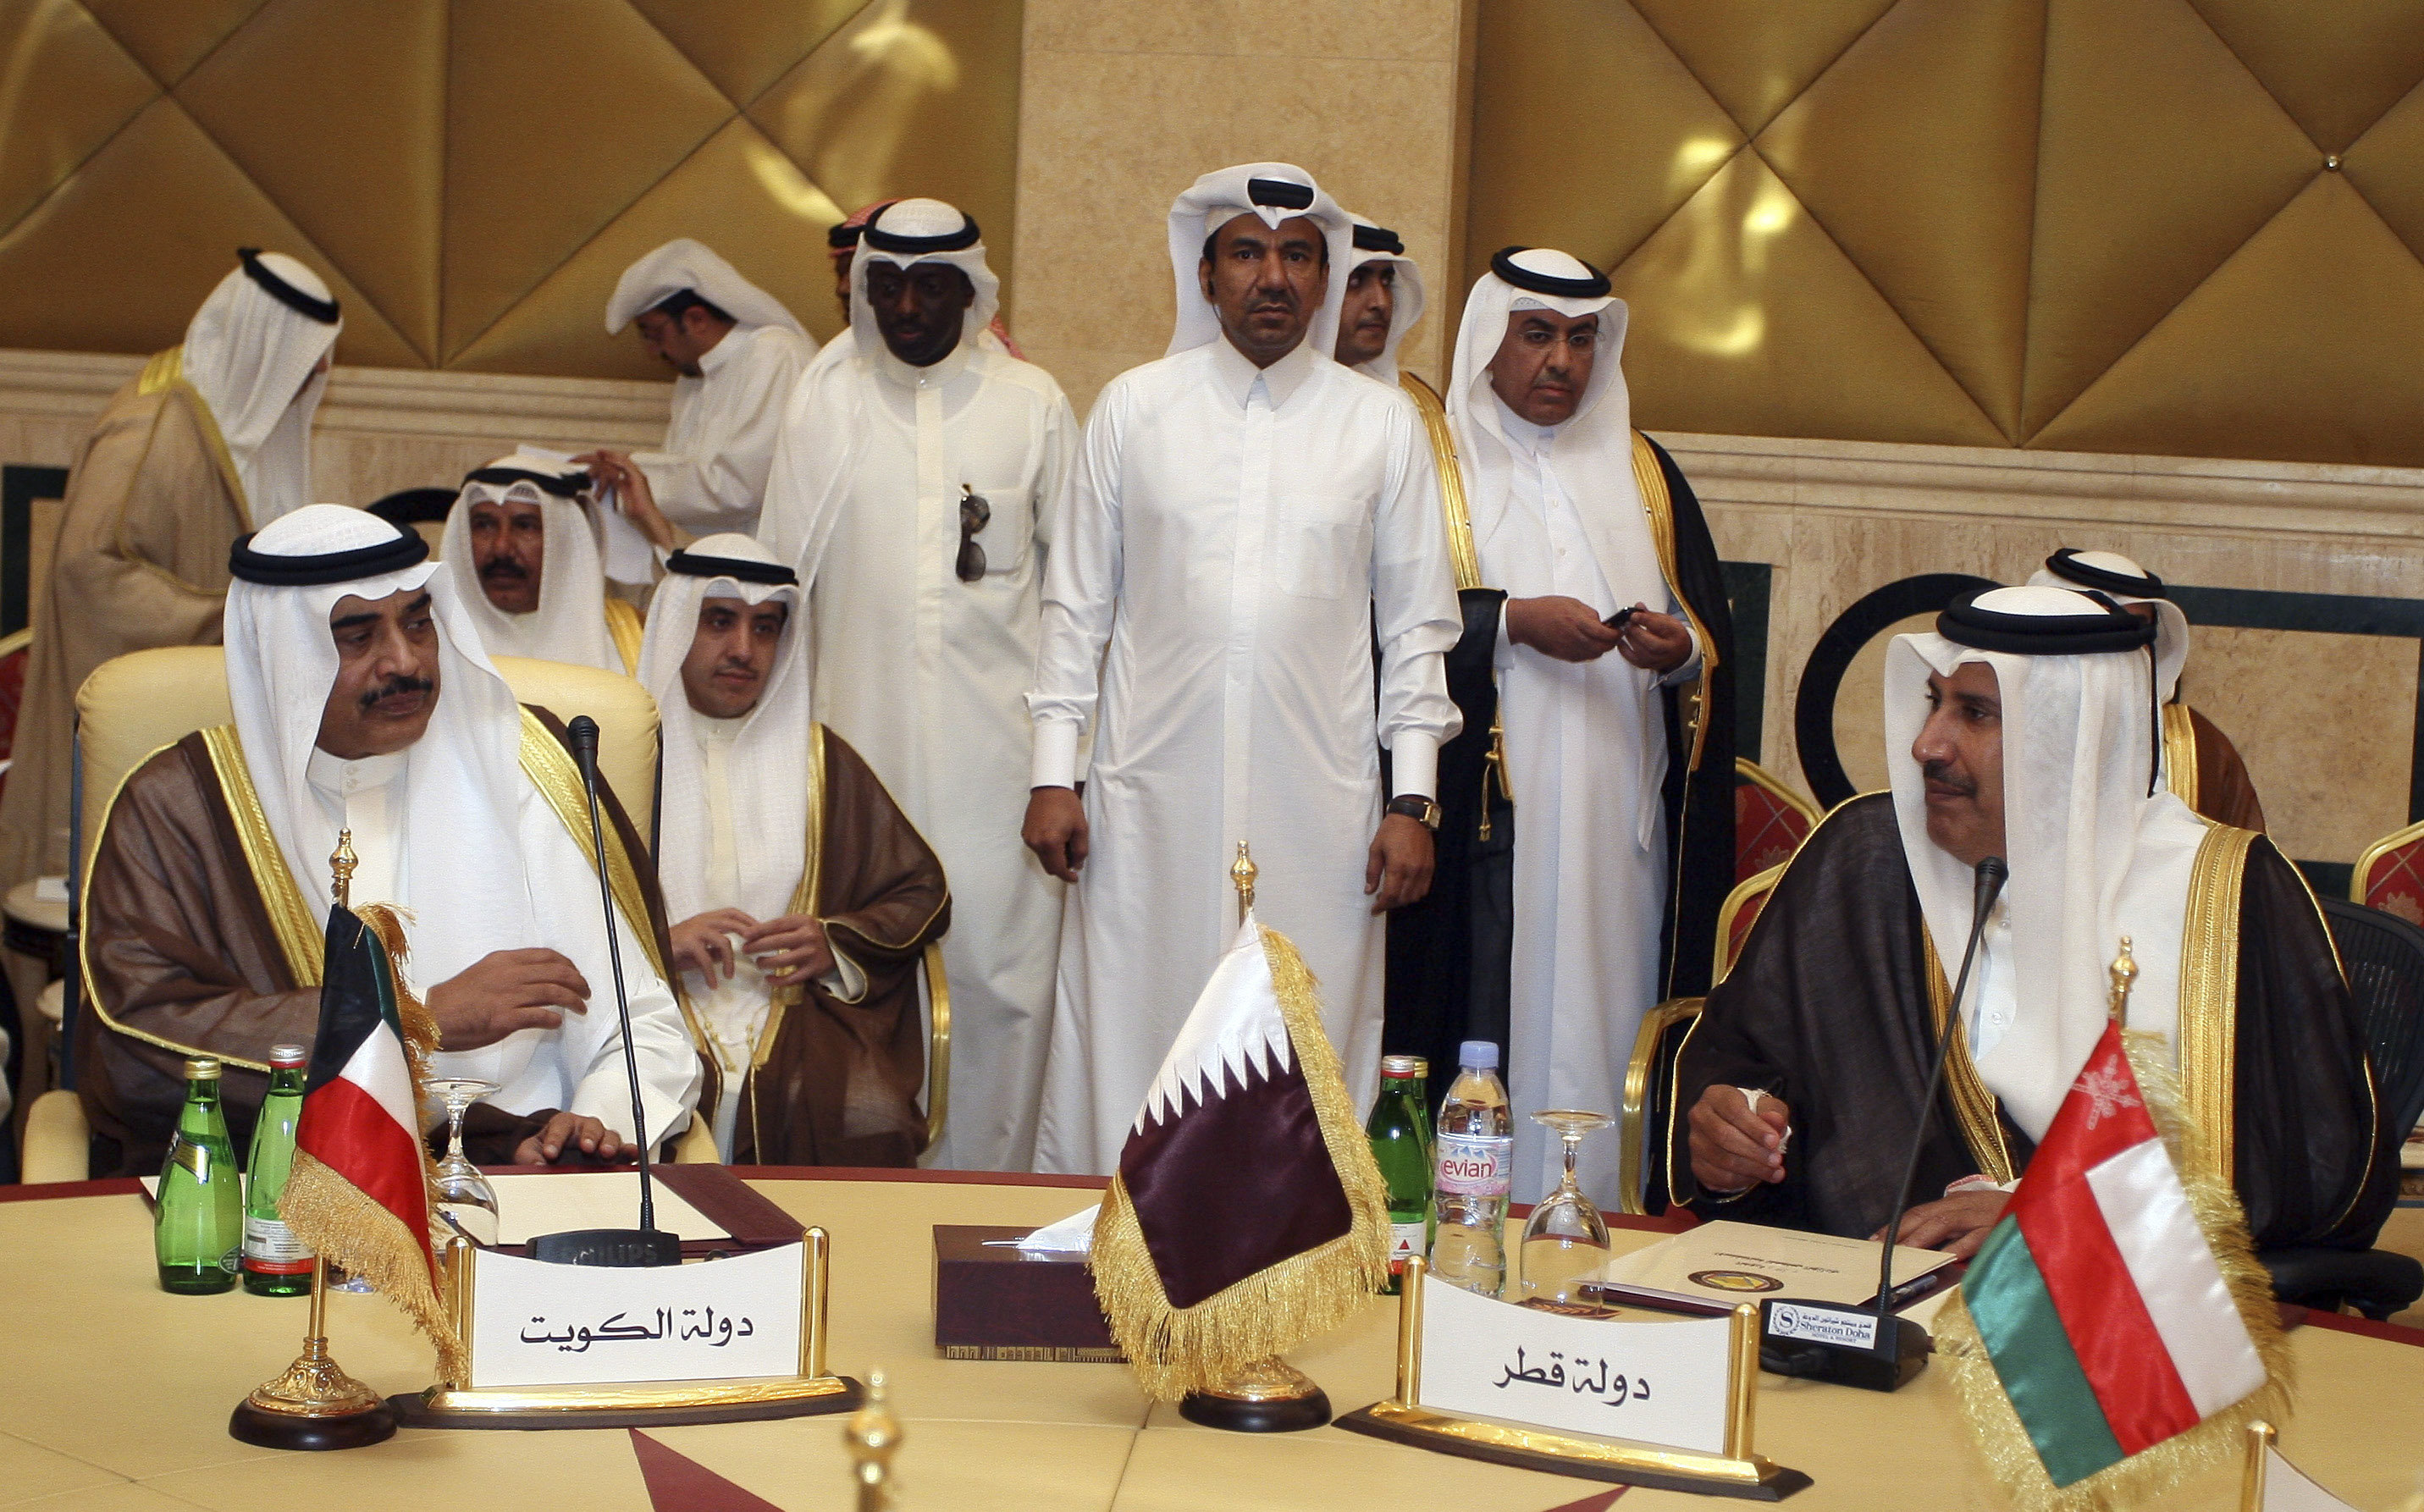 2022 är det dags för VM i Qatar - landet som förbjuder homosexualitet.